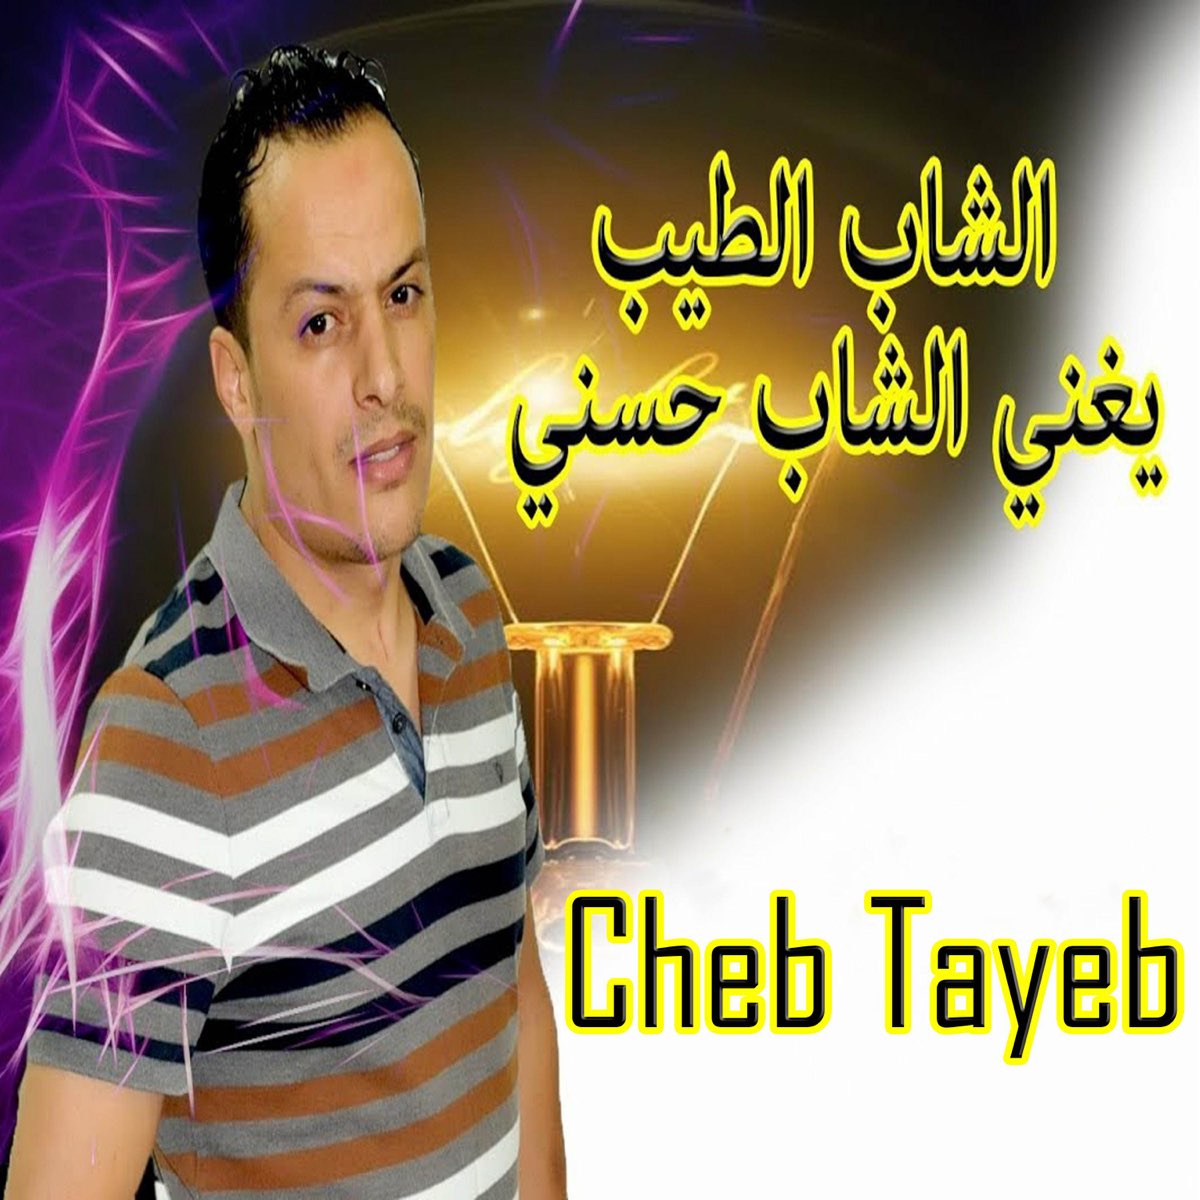 الشاب الطيب يغني الشاب حسني - Single by cheb tayeb on Apple Music